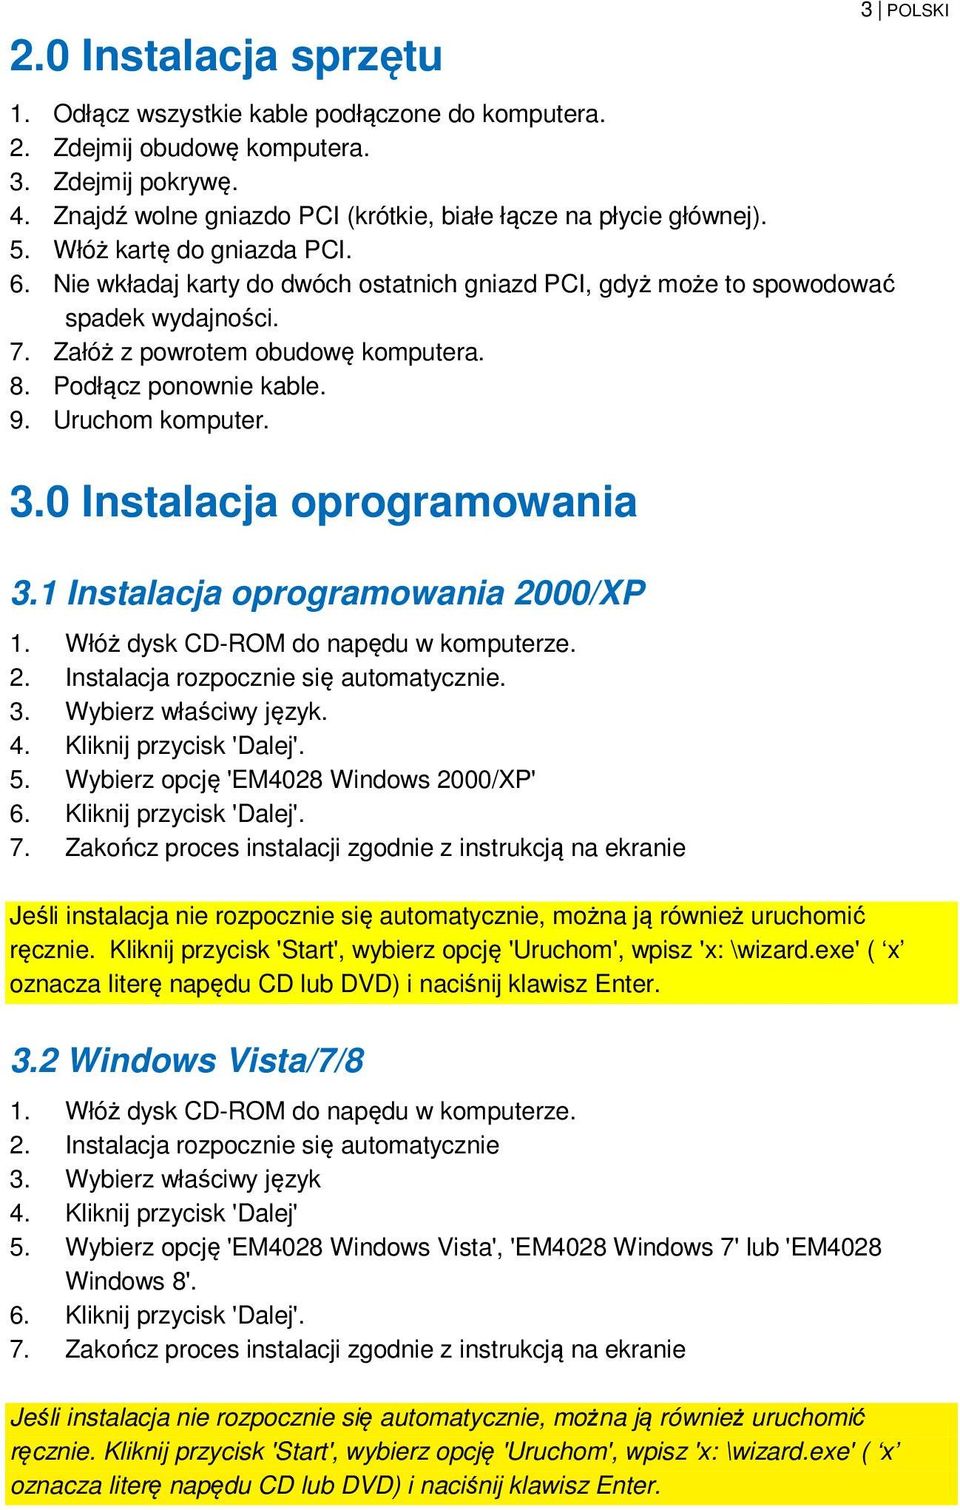 Uruchom komputer. 3.0 Instalacja oprogramowania 3.1 Instalacja oprogramowania 2000/XP 1. Włóż dysk CD-ROM do napędu w komputerze. 2. Instalacja rozpocznie się automatycznie. 3. Wybierz właściwy język.